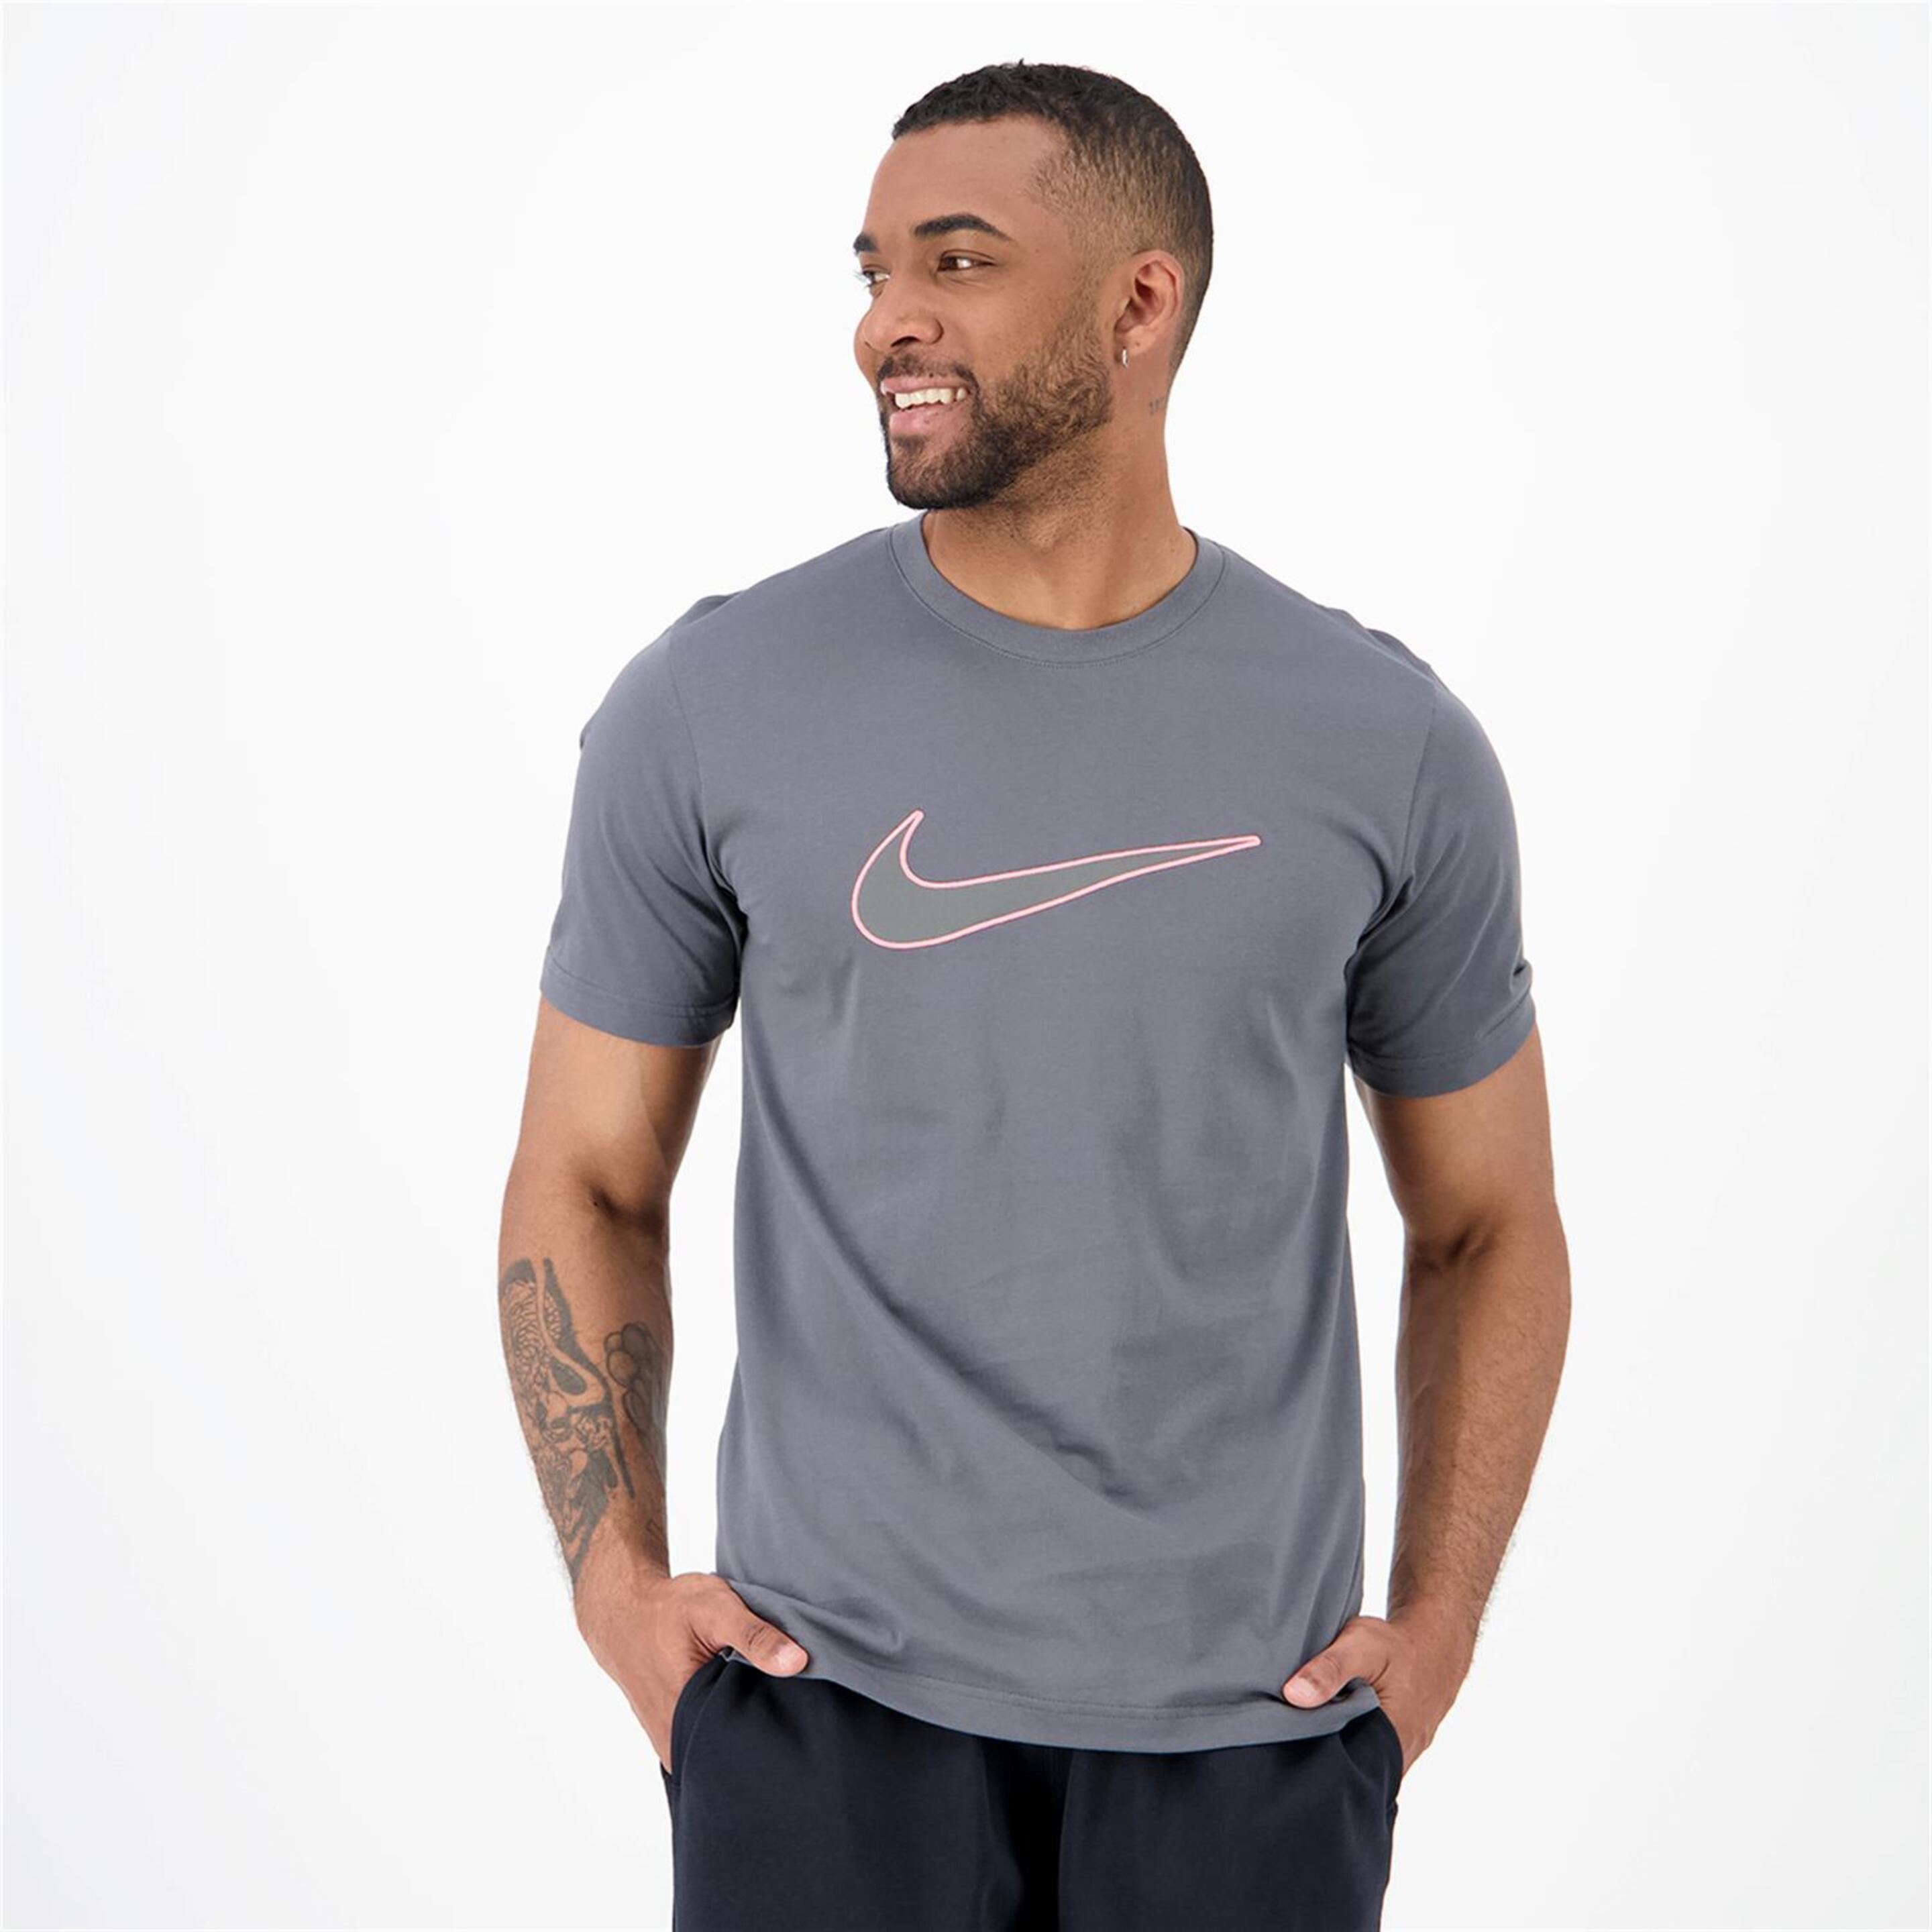 T-shirt Nike - gris - T-shirt Homem